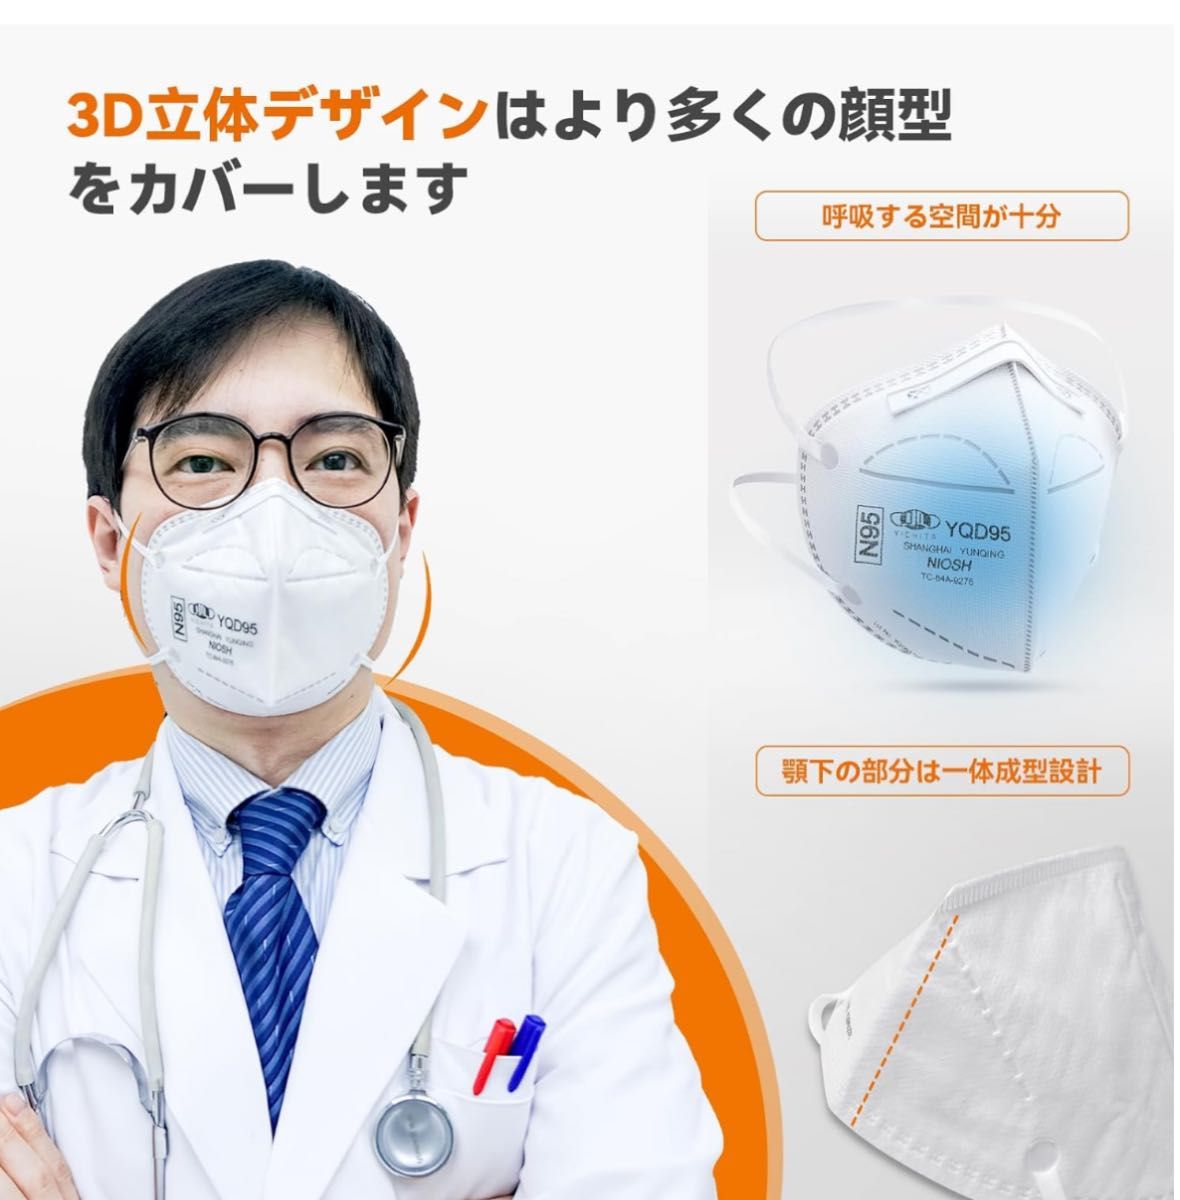 医療用N95マスク 個包装 折畳式 頭掛け式  360度3D設計